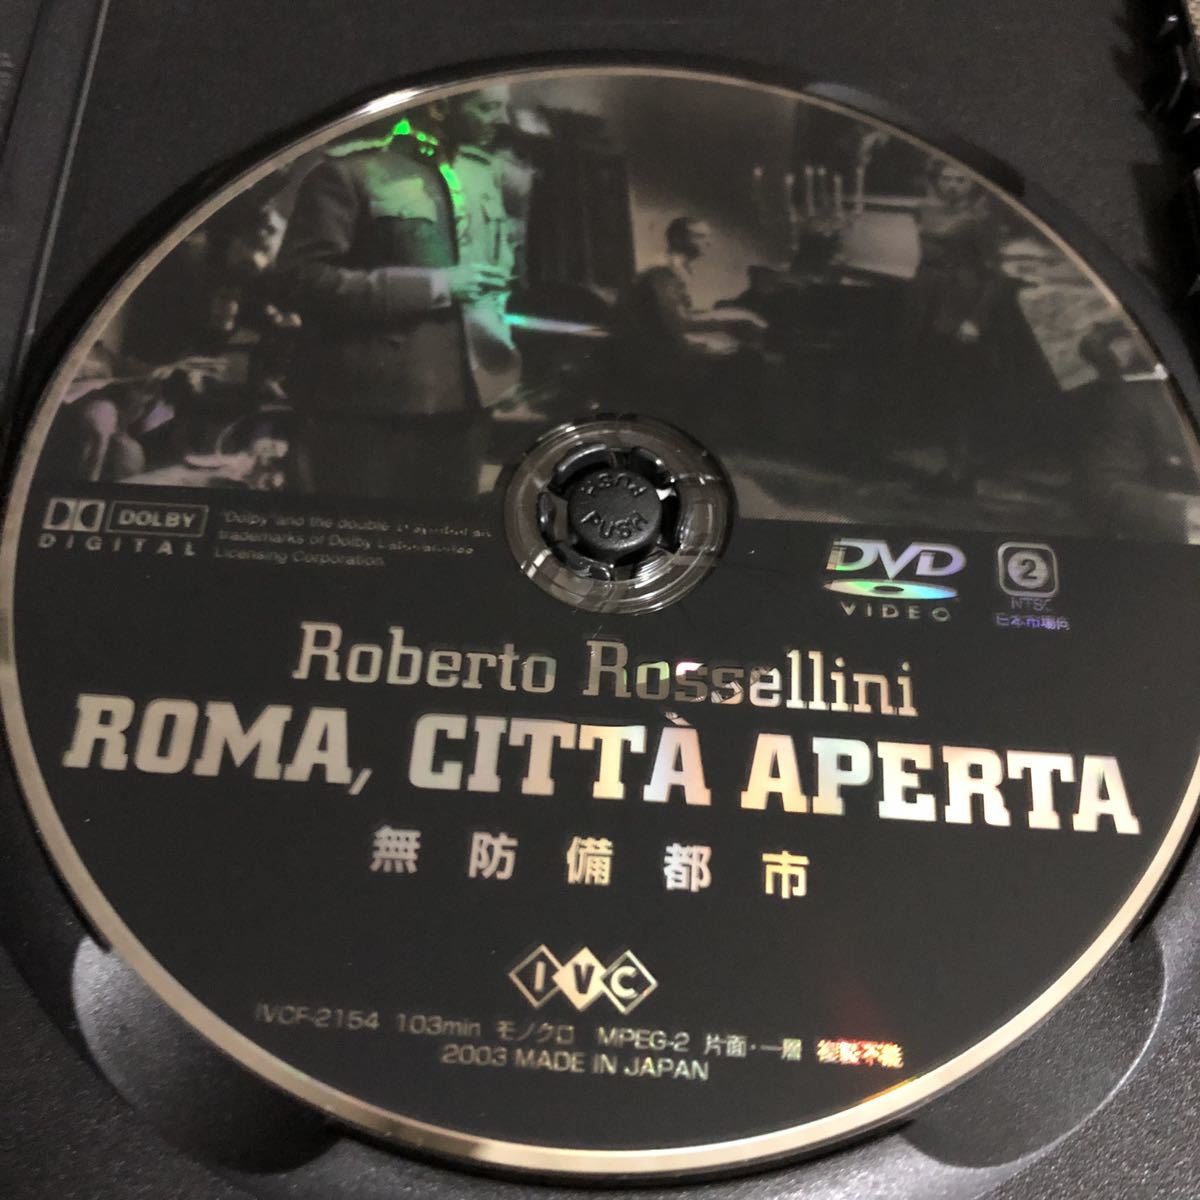 『無防備都市』ロベルト・ロッセリーニ / アンナ・マニャーニ (DVD/IVC)【イタリア】【送料無料】